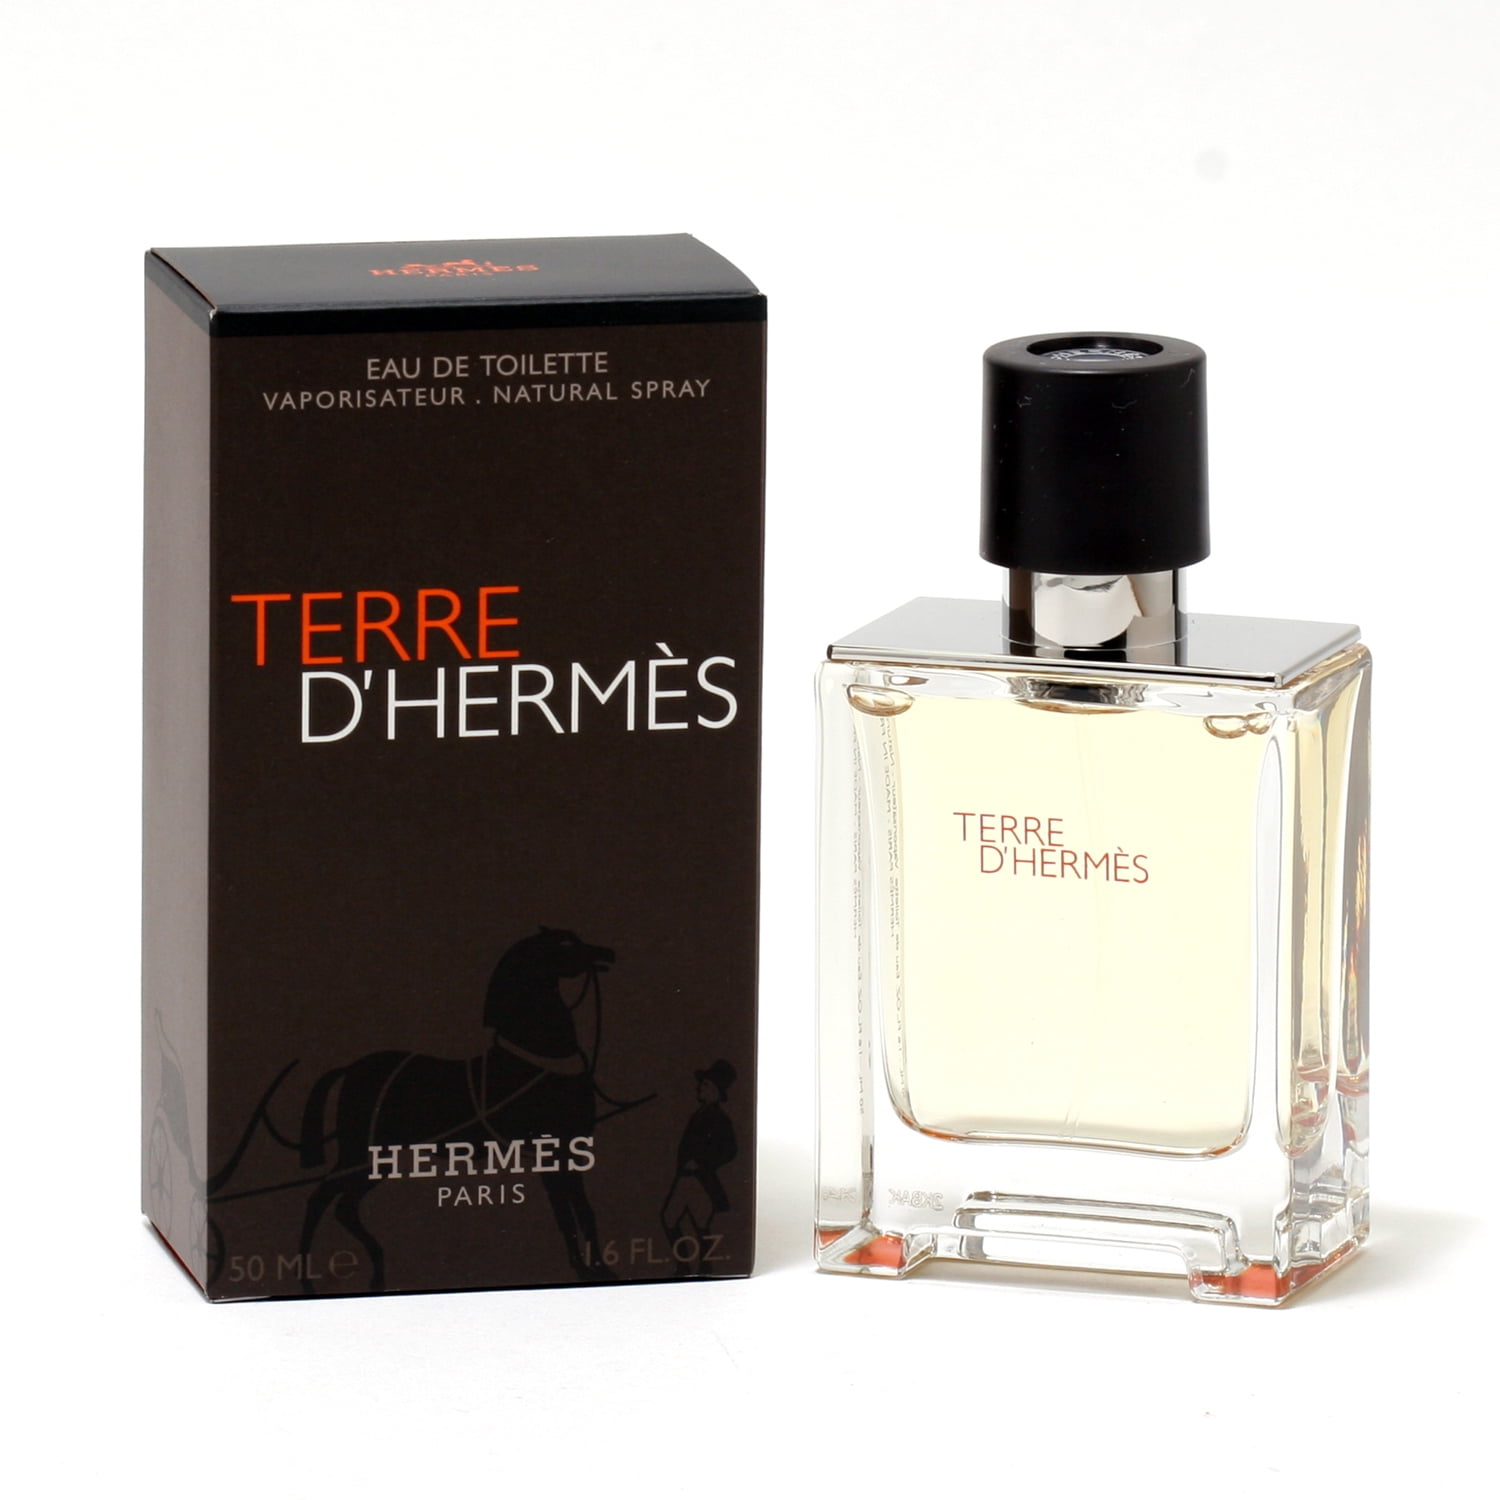 Туалетная вода d hermes. Hermes "Terre d`Hermes " 100 ml. Hermes Terre d'Hermes pour homme туалетная вода 100мл. Hermes Terre d'Hermes EDT M. Terre d'Hermes EDT for men 100 ml.